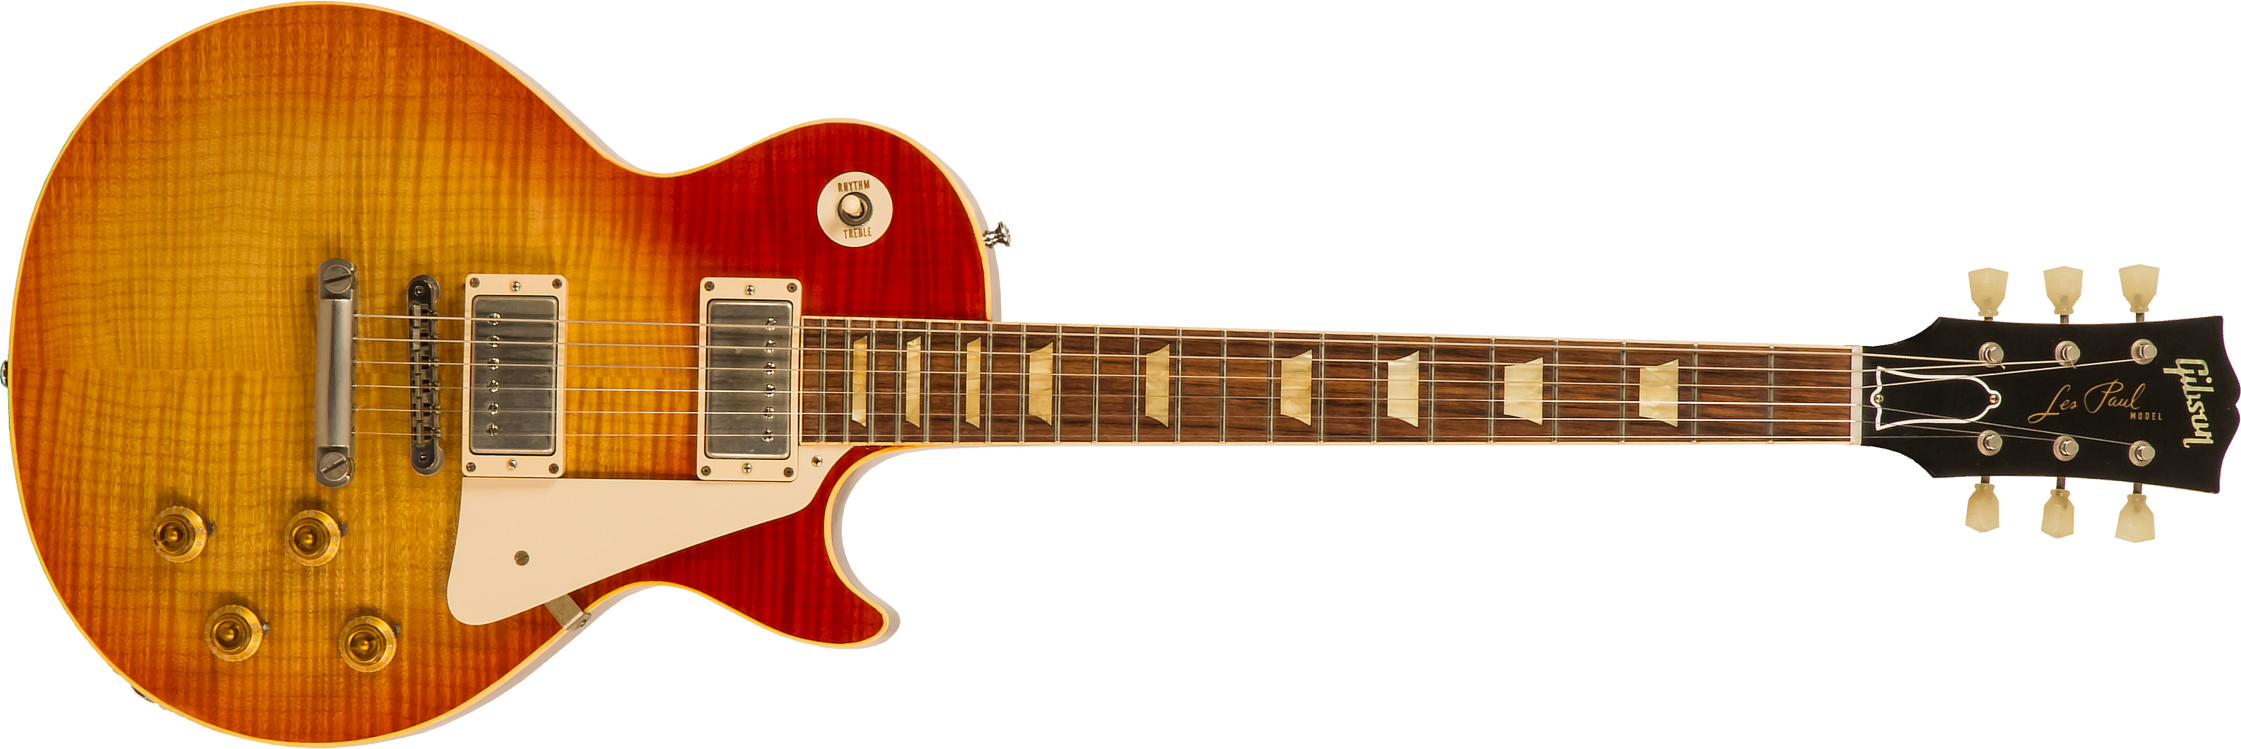 Gibson Custom Shop Les Paul Les Paul 1959 Southern Rock Tribute 2h Rw #srt0021 - Vos Reverse Burst - Guitarra eléctrica de corte único. - Main picture